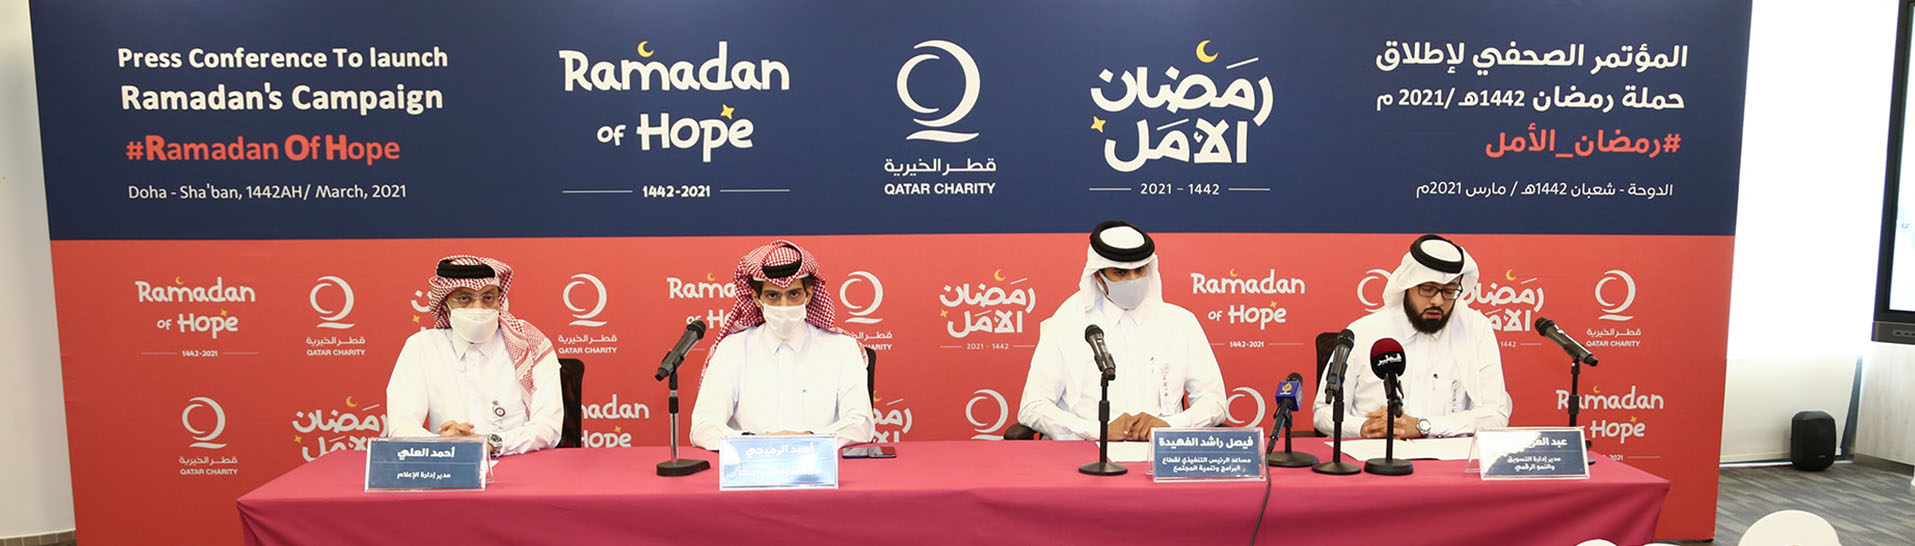 انطلاق حملة قطر الخيرية الرمضانية رمضان الأمل